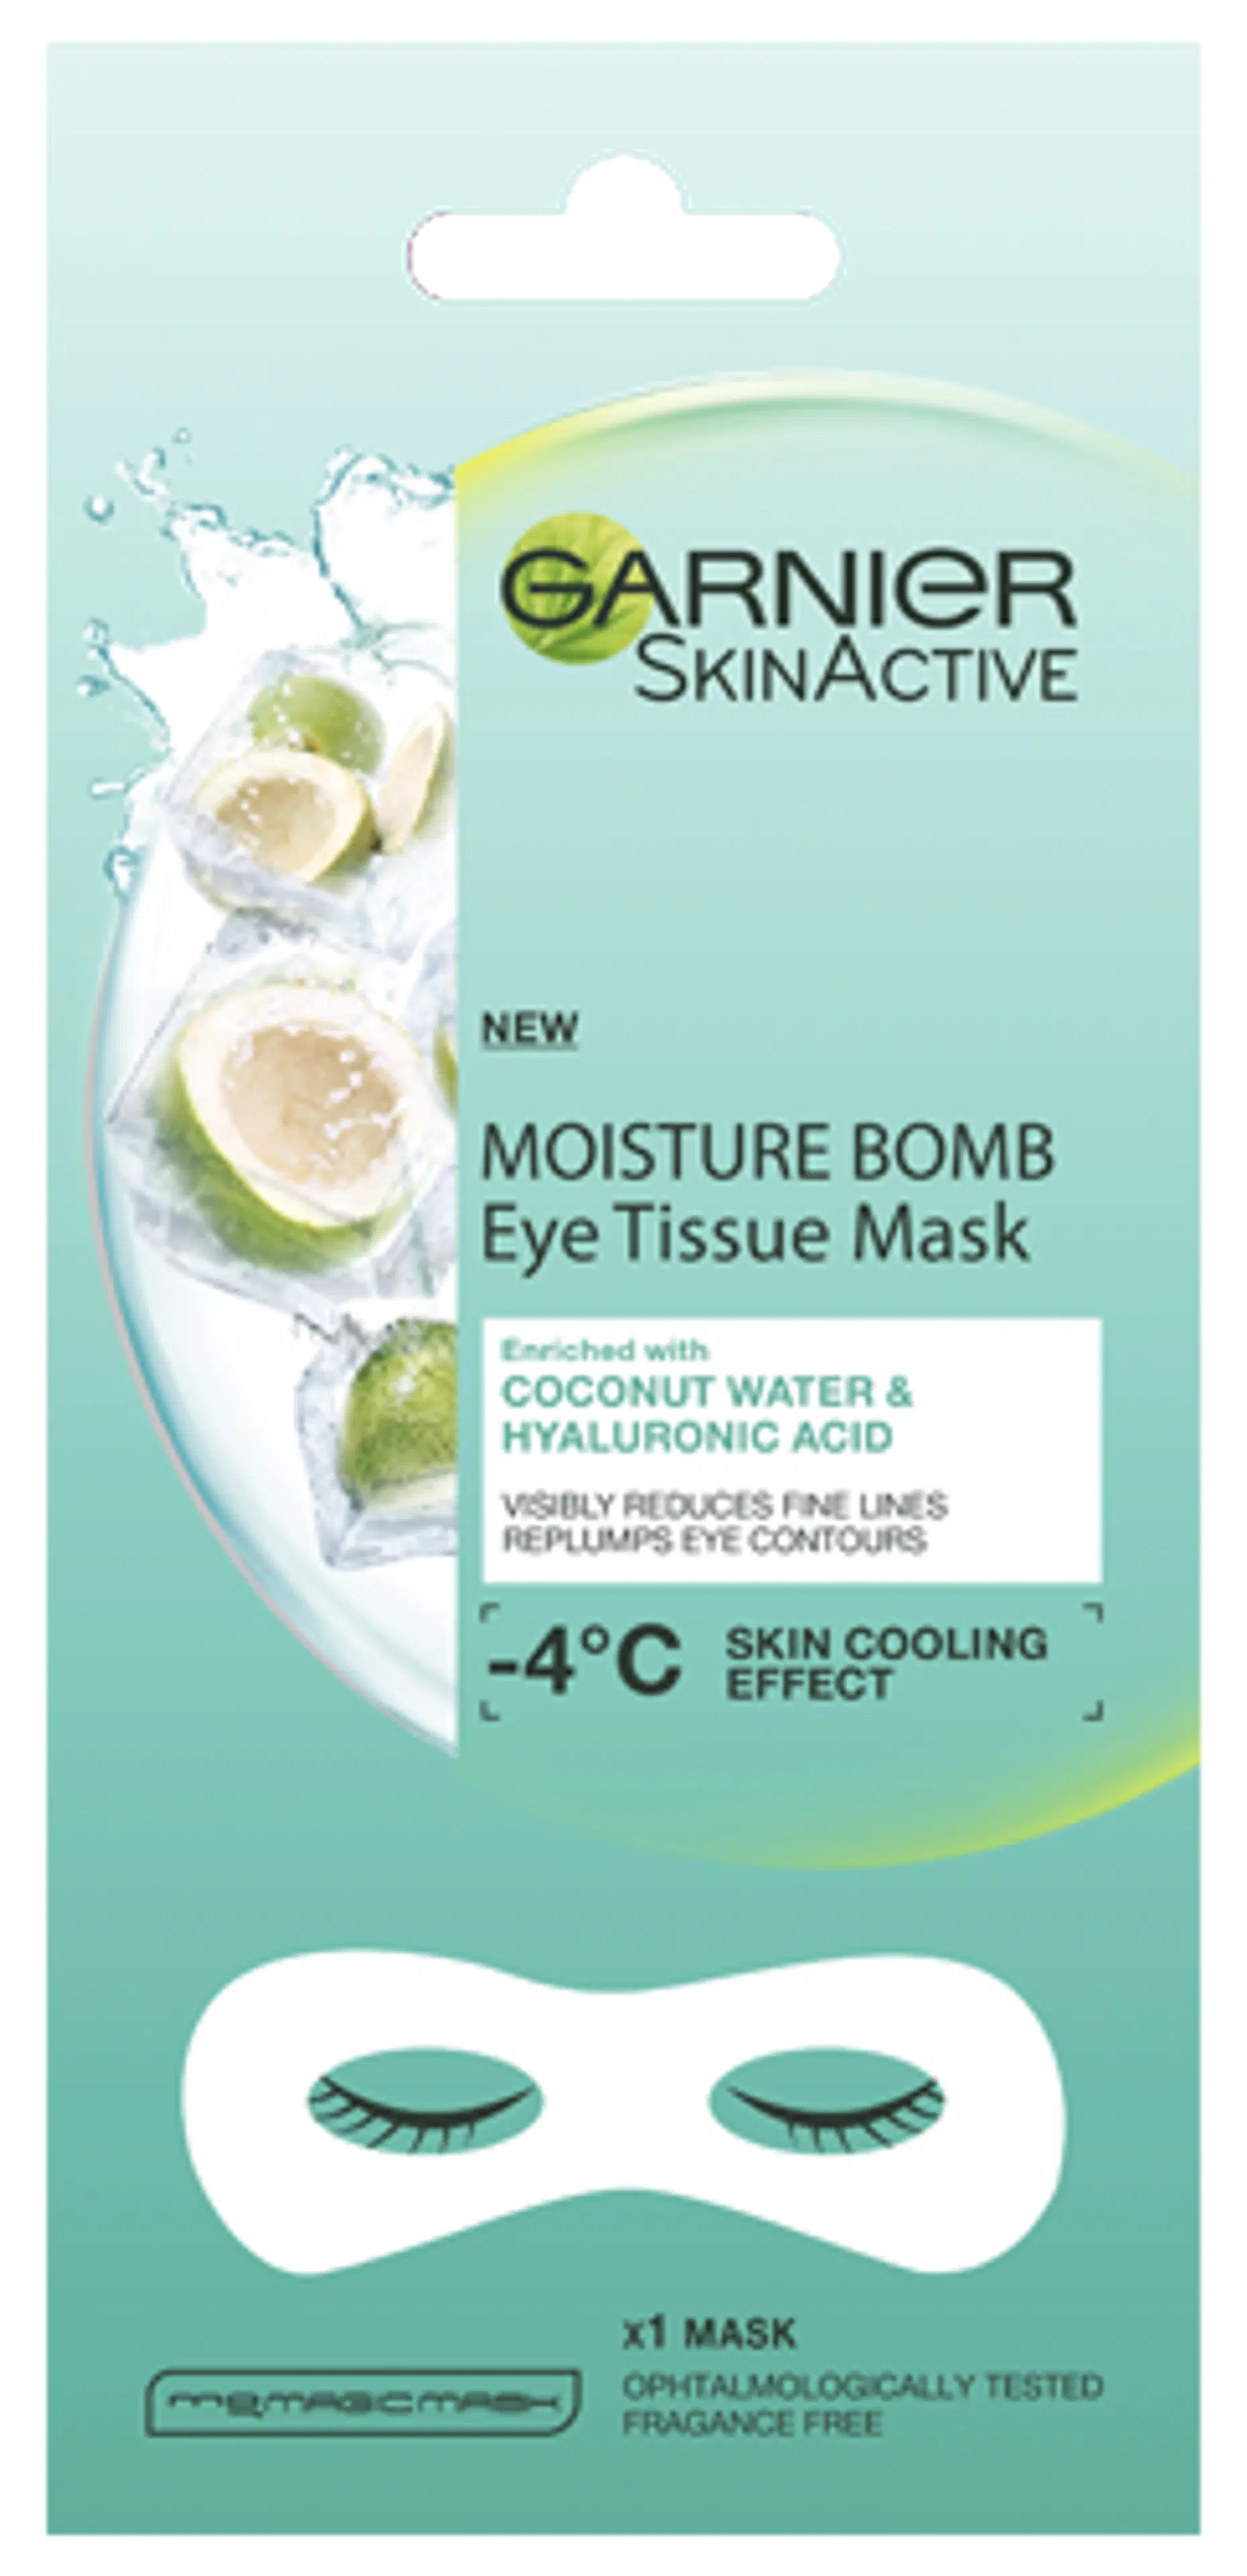 Garnier Skin Active Moisture Bomb Eye Tissue Mask Coconut Water silmänalusnaamio, juonteista vähemmän näkyvät  6g